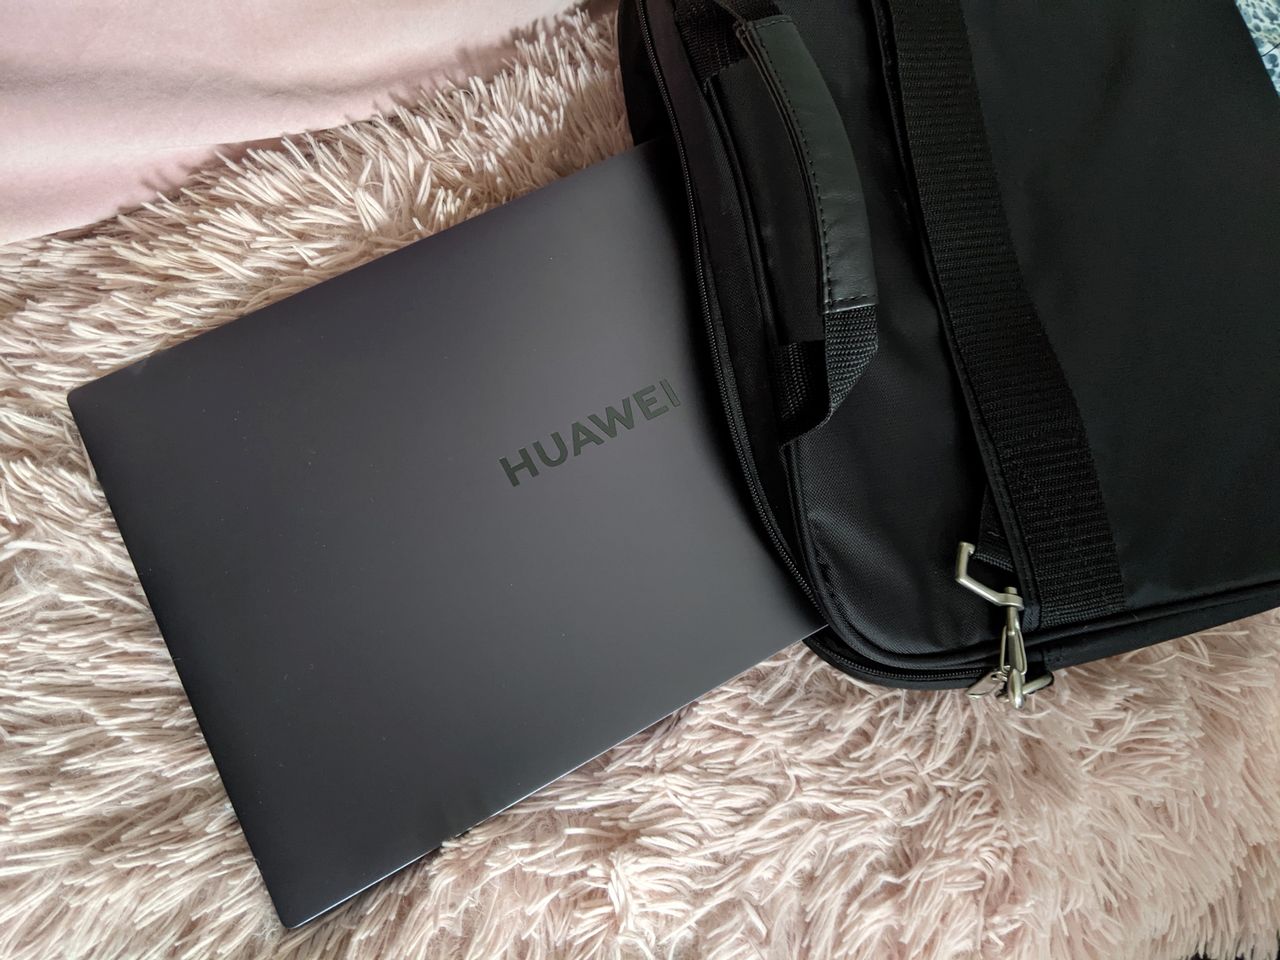 Testujemy Huawei MateBook D16 - dobrze wyceniony, uniwersalny notebook z 16-calowym ekranem